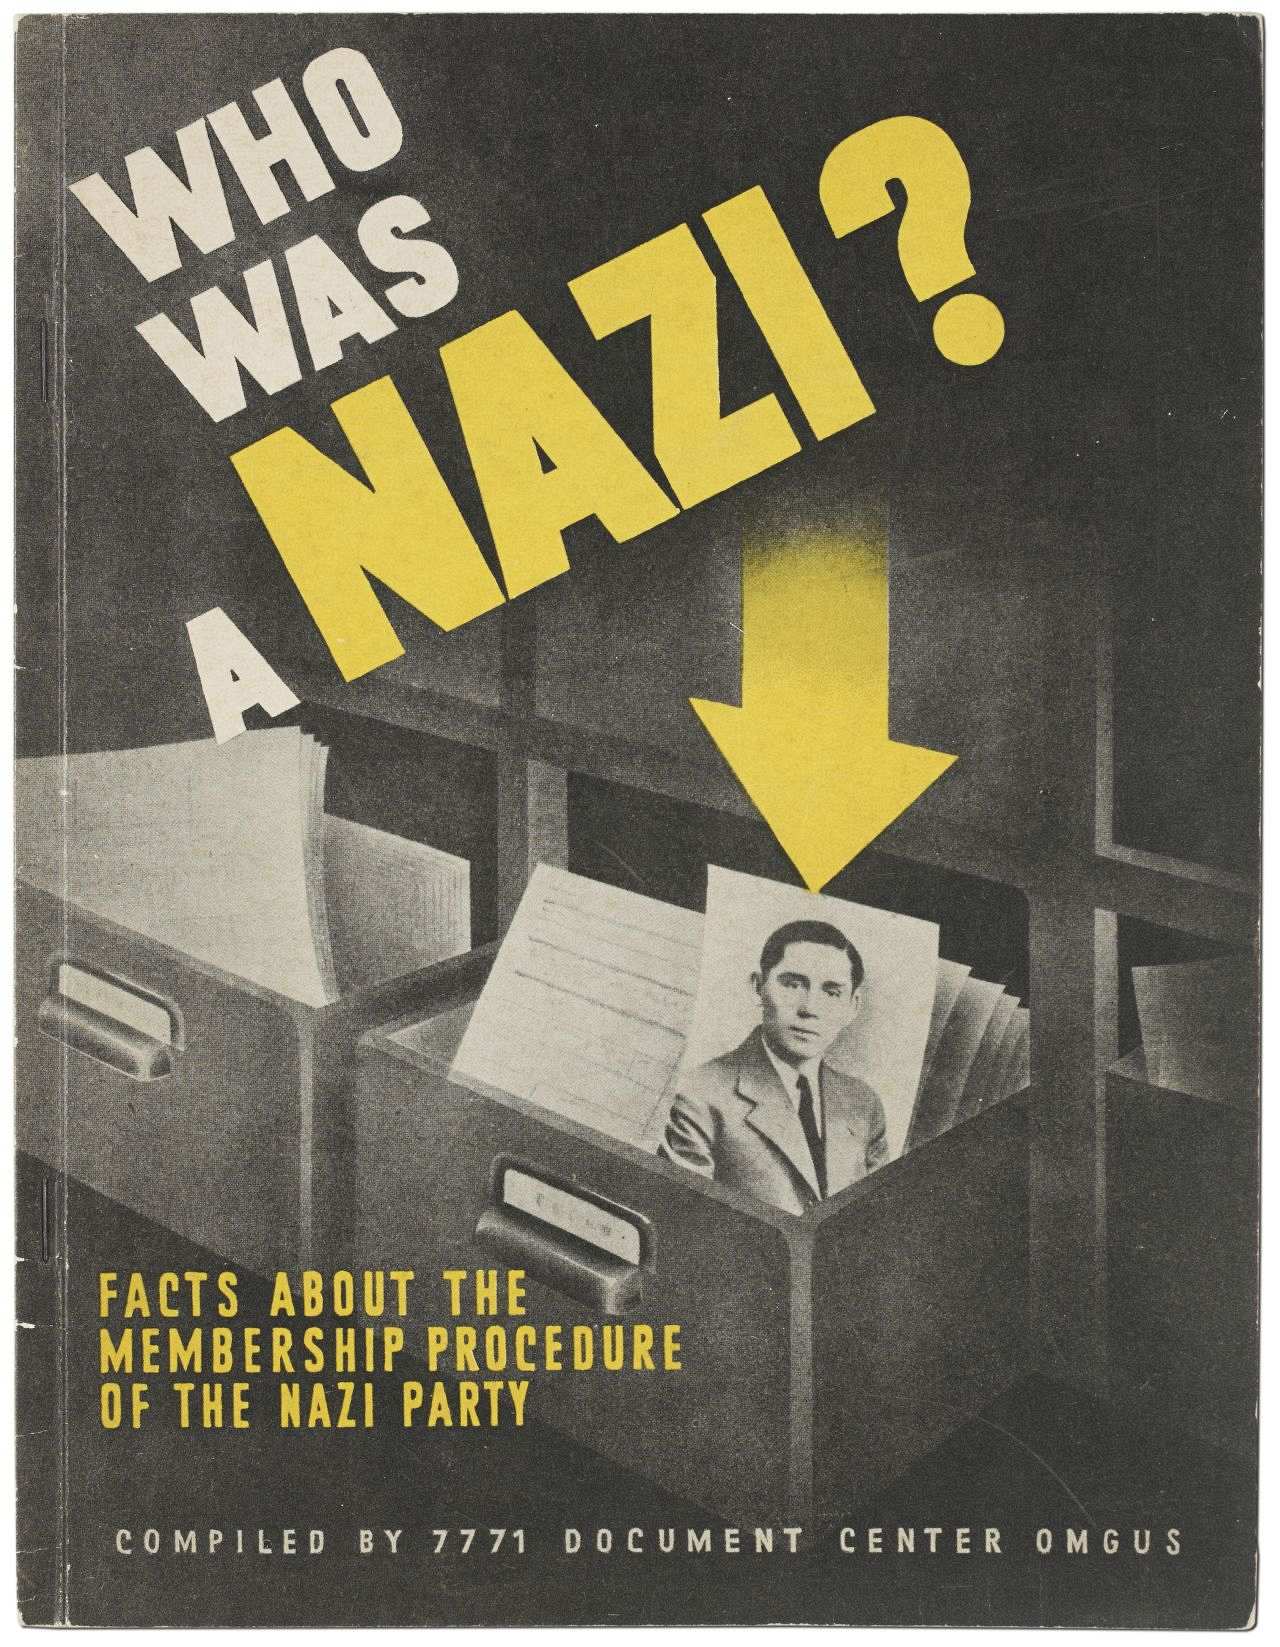 Broschüre über die Entnazifizierung und die Mitgliedschaft in der NSDAP